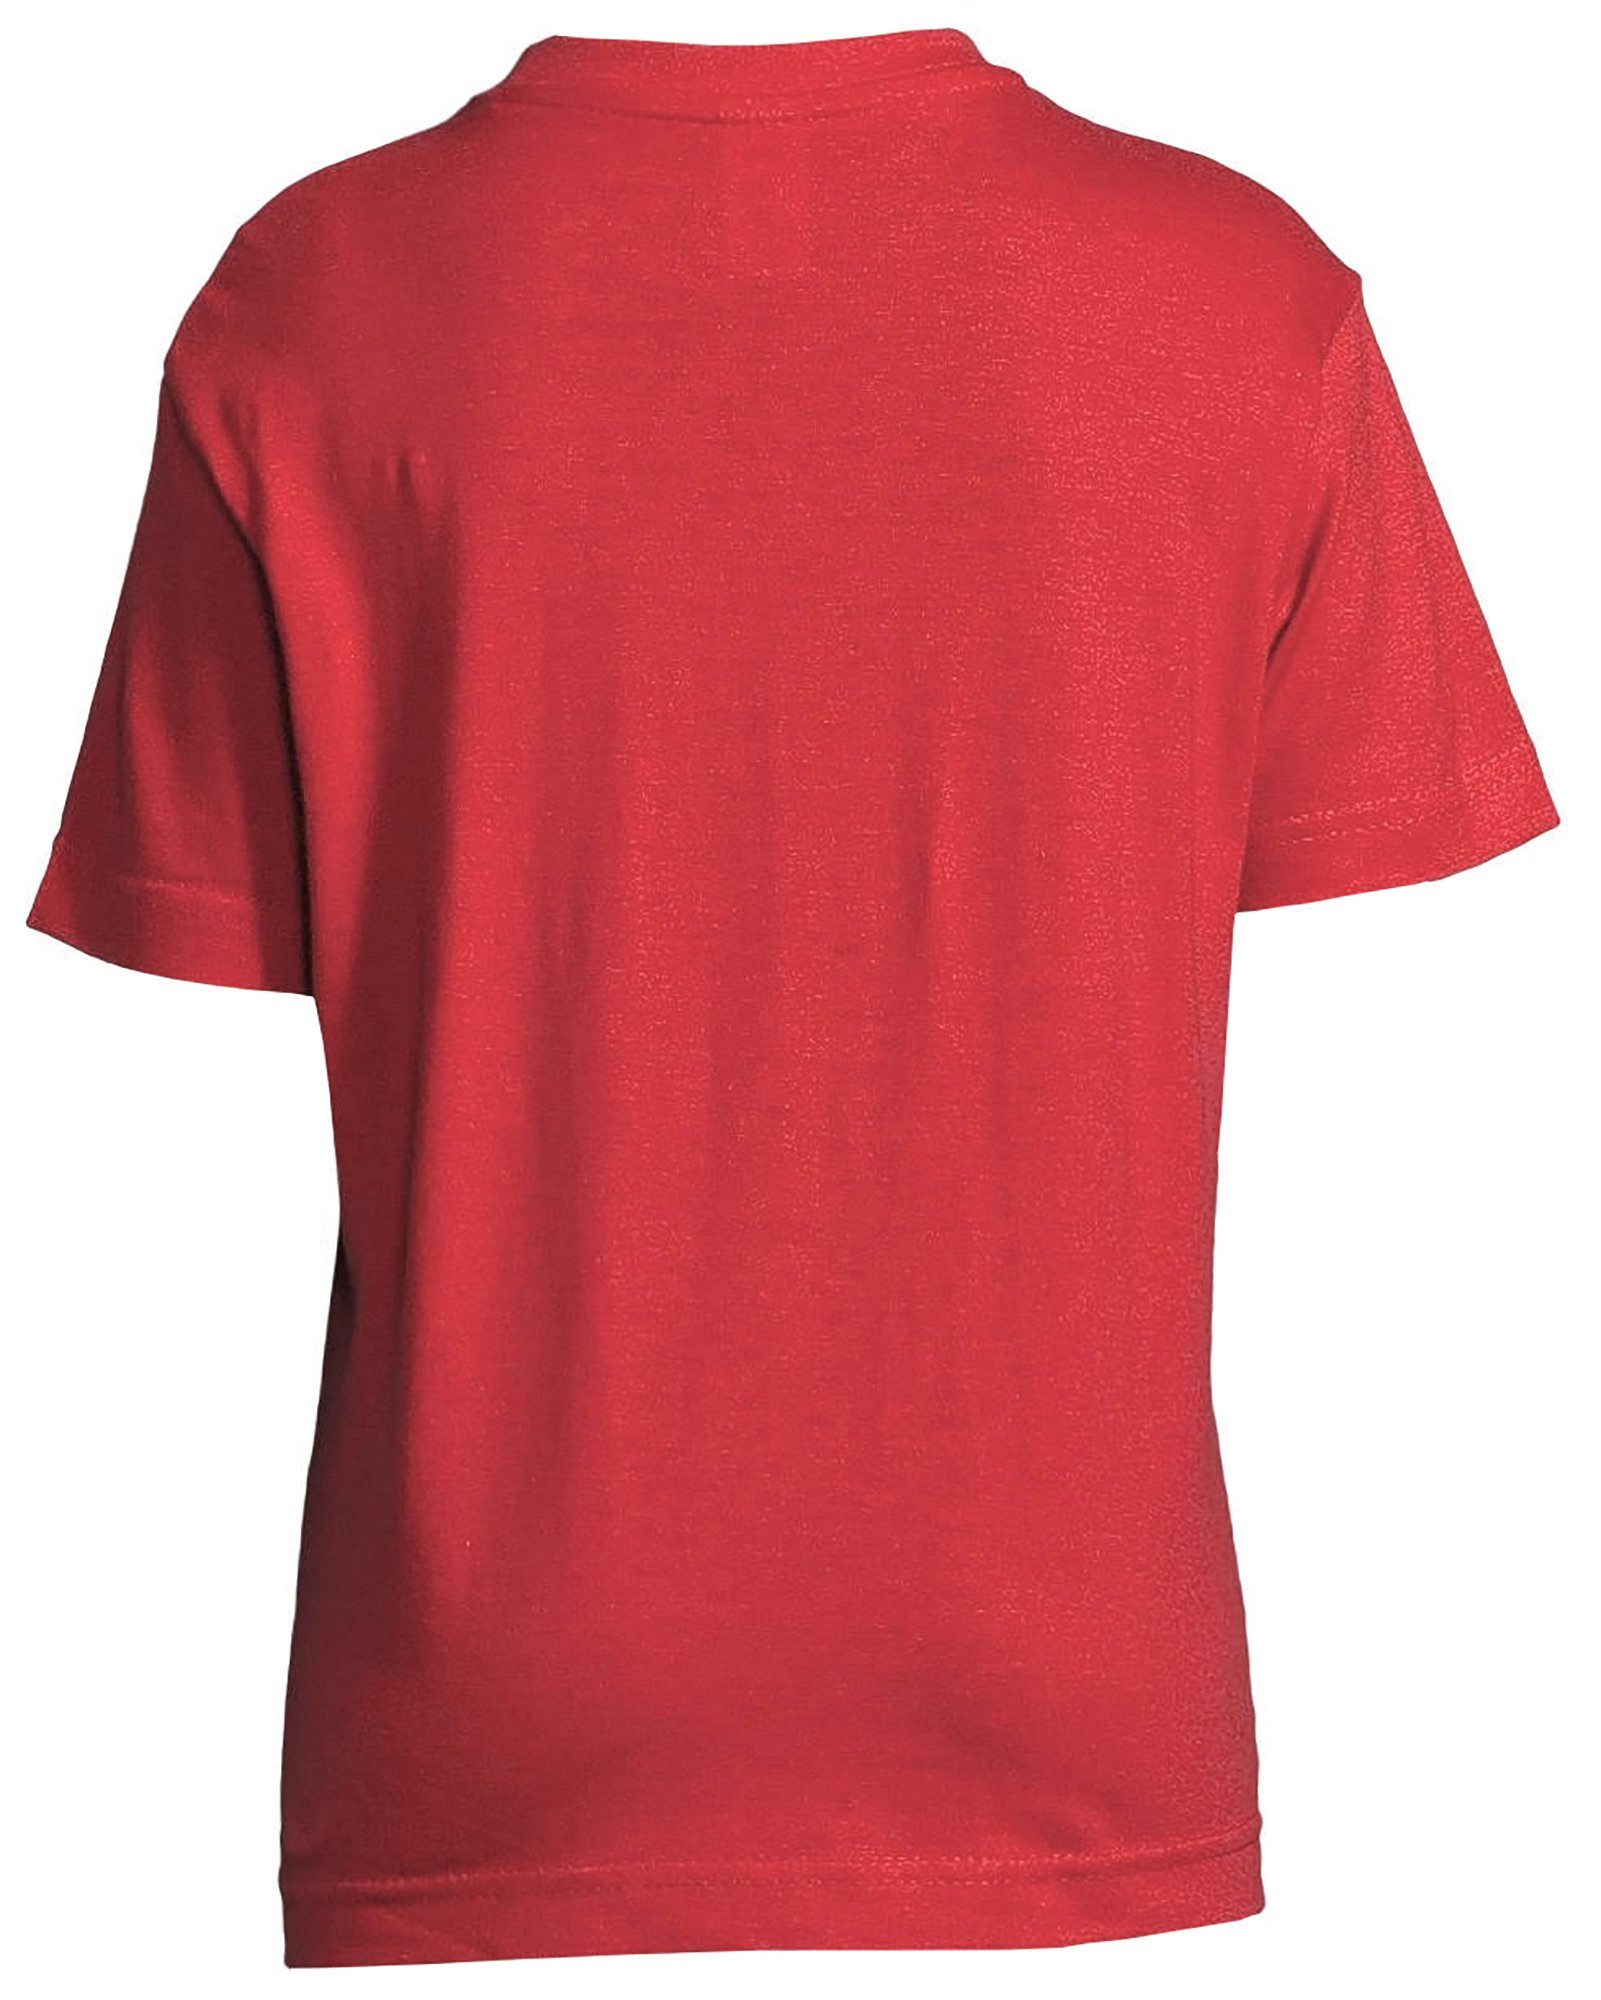 bedrucktes rot Baumwollshirt Mädchen Print-Shirt mit mit Aufdruck, Turnerin MyDesign24 i172 Pferde T-Shirt